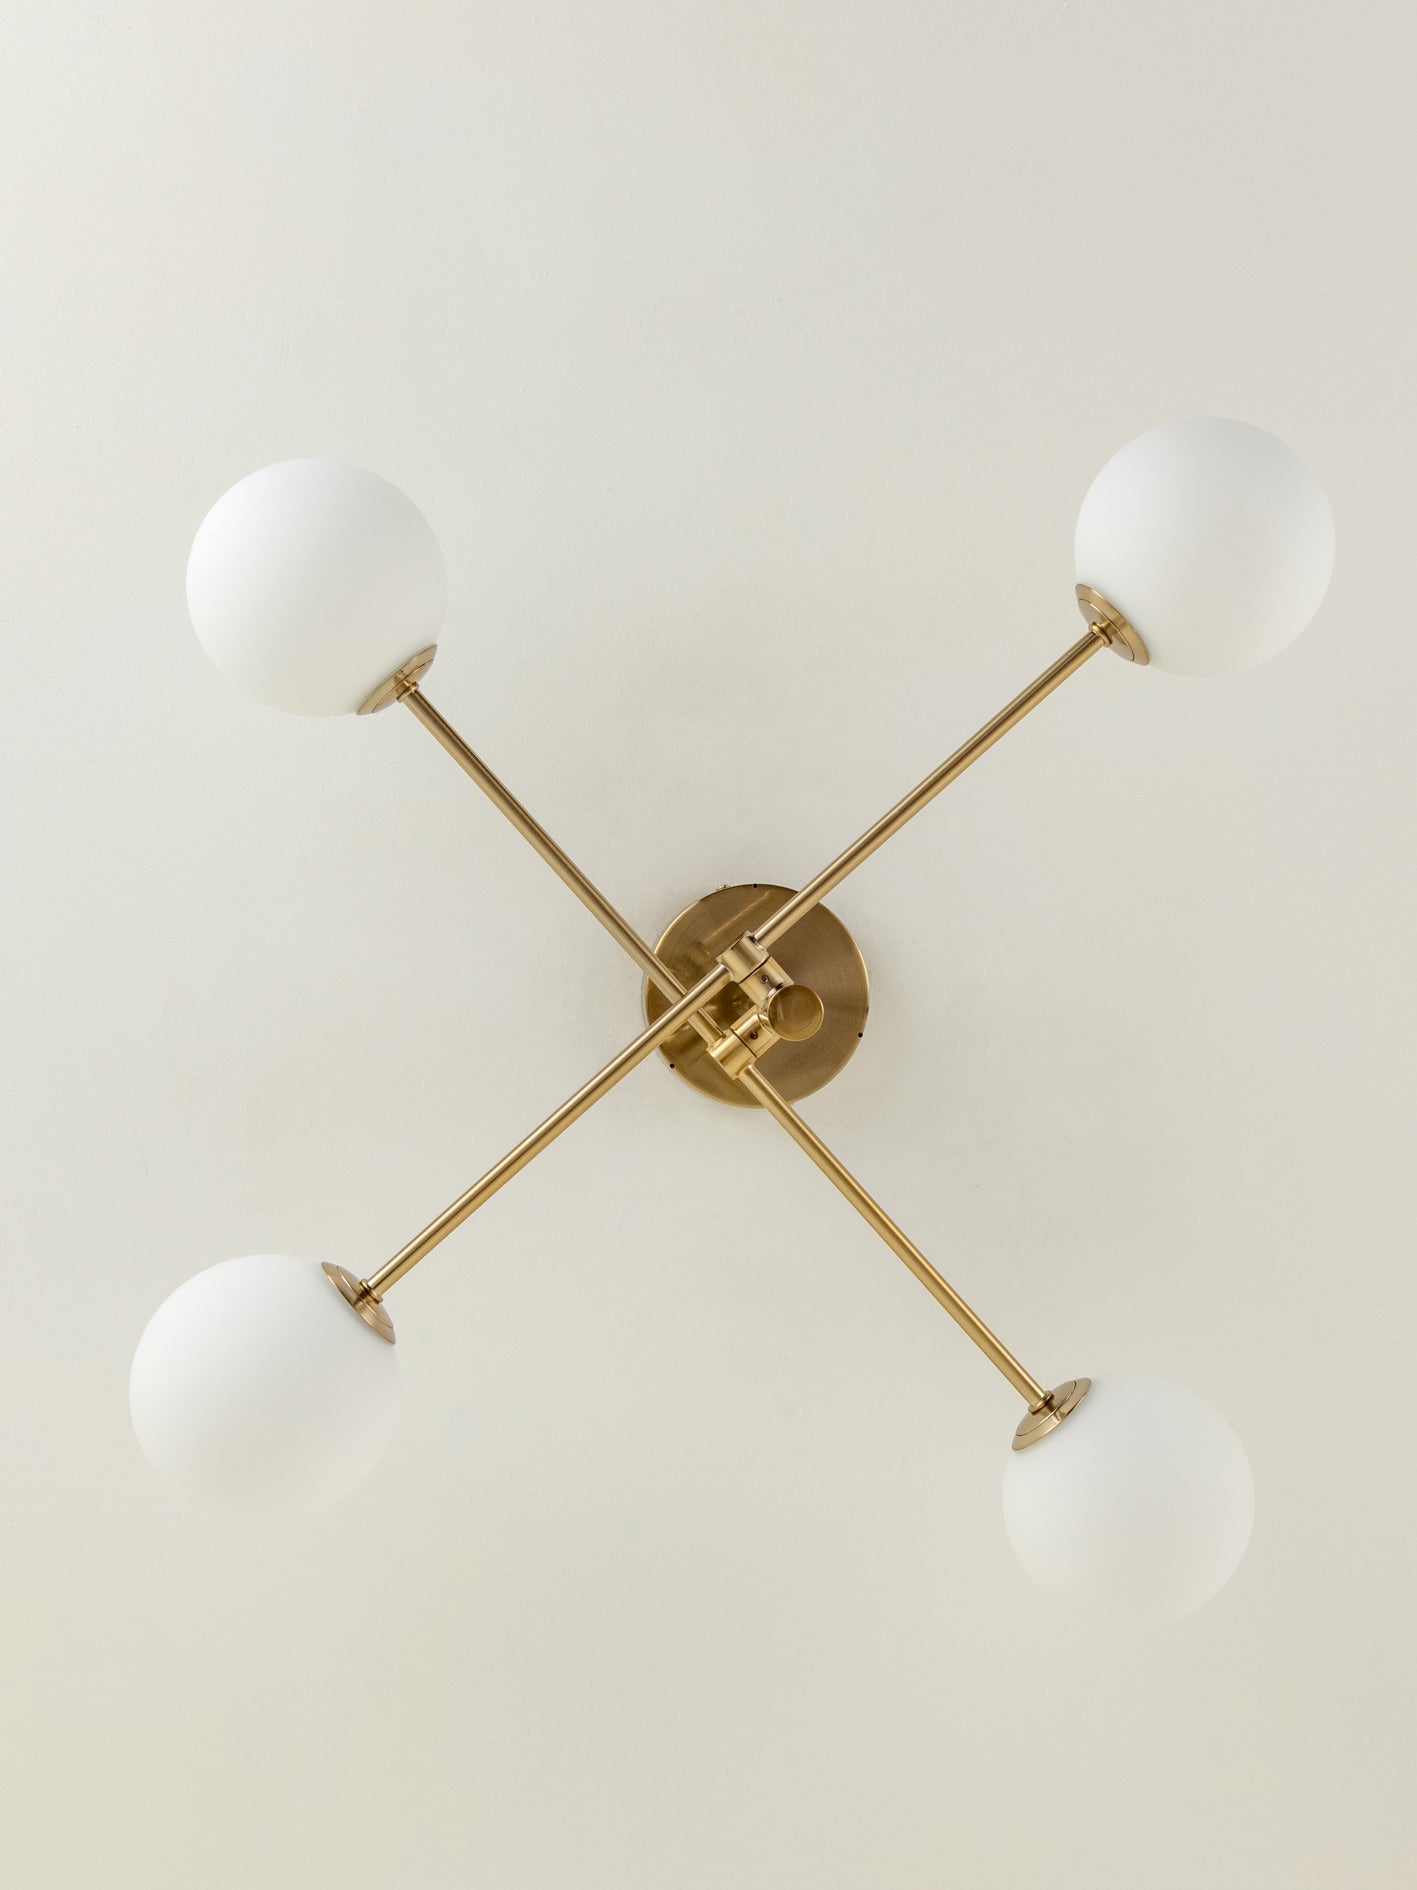 Chelso - 4 light brass and opal flush | Ceiling Light | Lights & Lamps | UK | Modern Affordable Designer Lighting